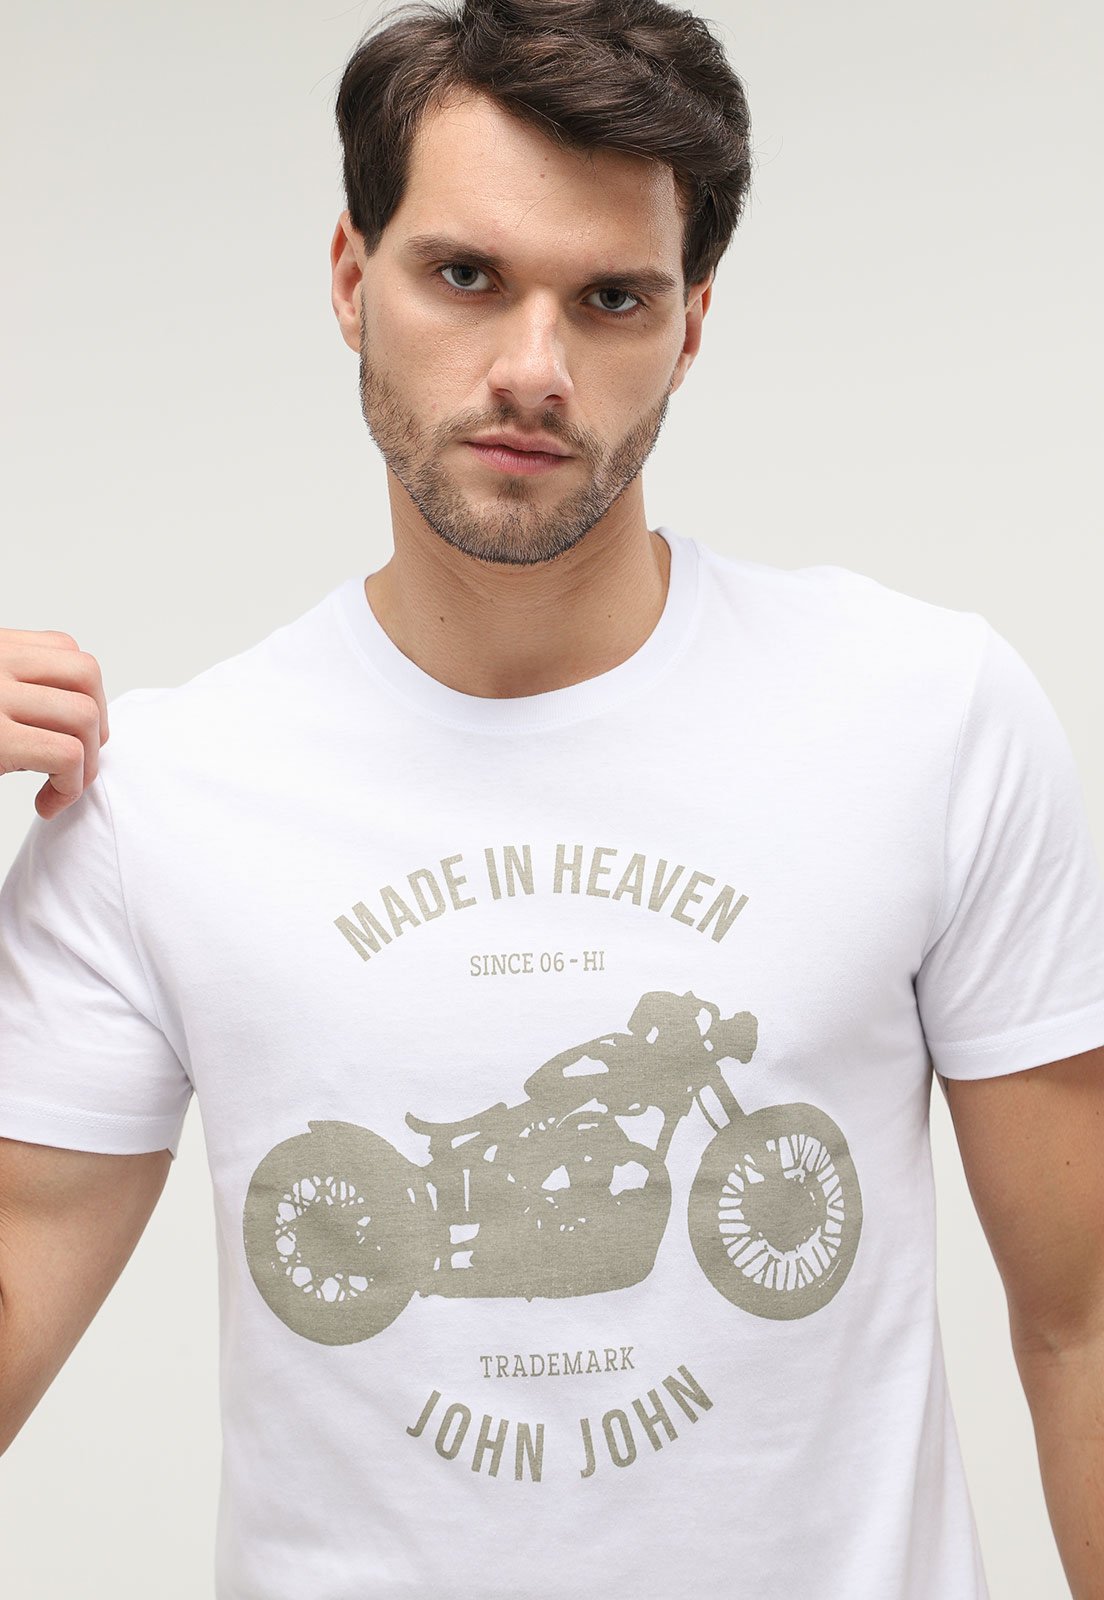 Camiseta John John Masculina Motorcycle Suply Co. Branca - Compre Agora